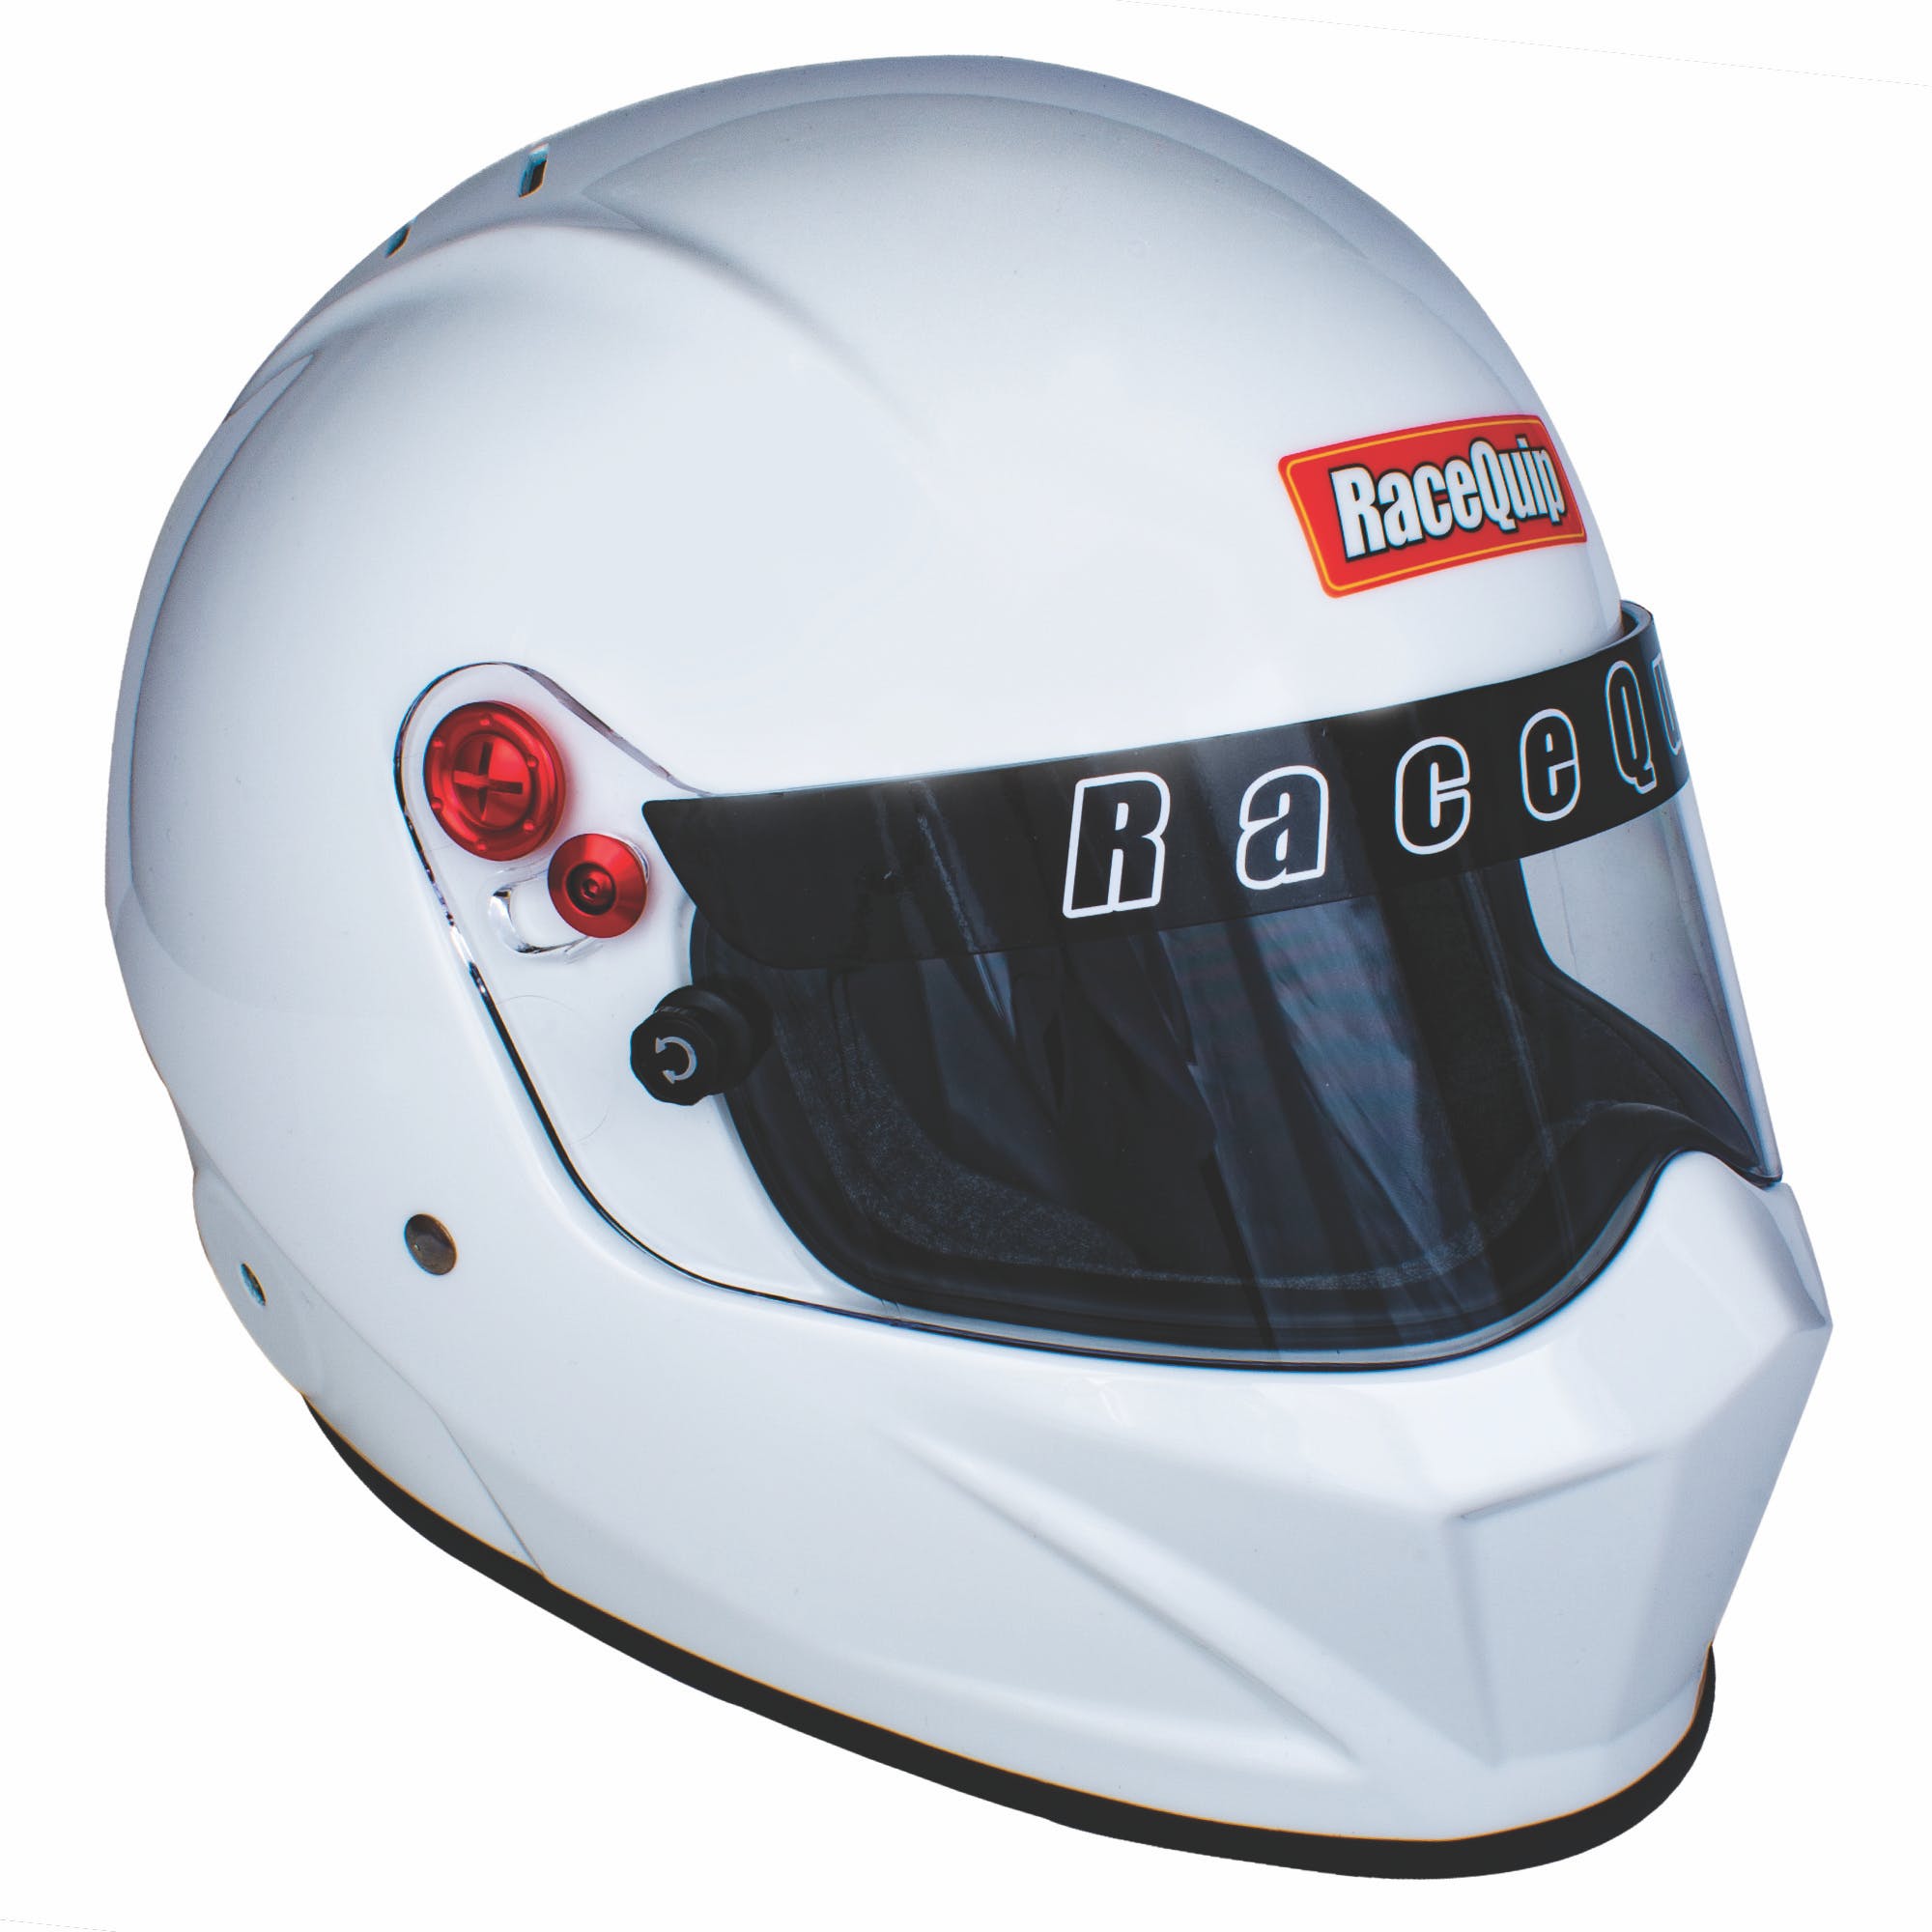 RaceQuip 286113 VESTA20 Full Face Helmet Snell SA2020 Rated; Gloss White Medium